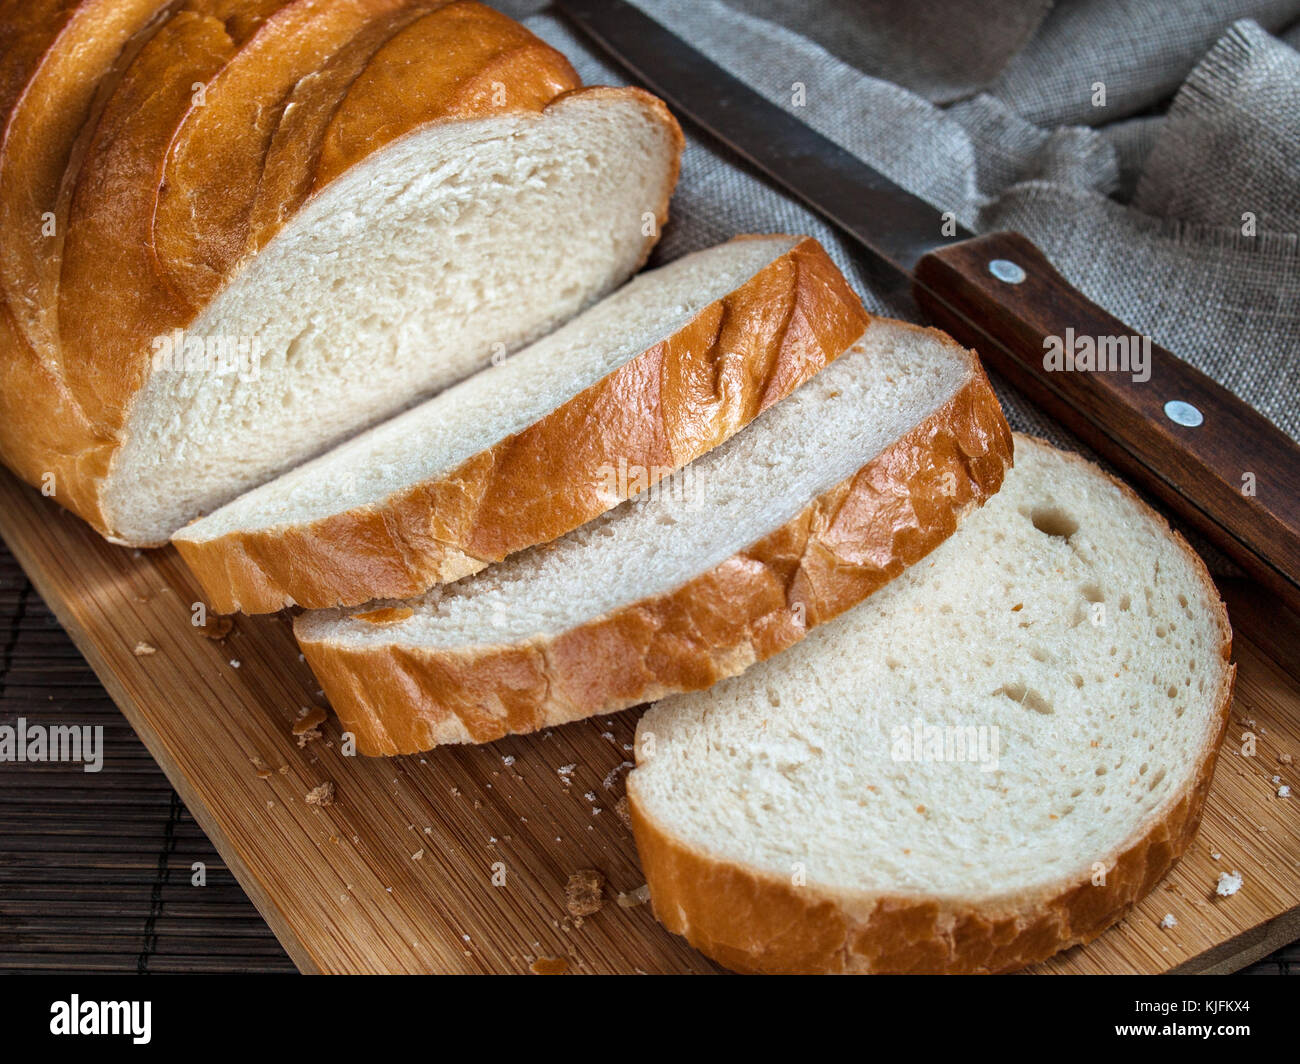 Fresca e deliziosa, aromatico e appetitoso il pane bianco di farina di grano per la prima colazione, il pranzo e la cena pronta da mangiare tagliato a pezzi in una cucina in legno b Foto Stock